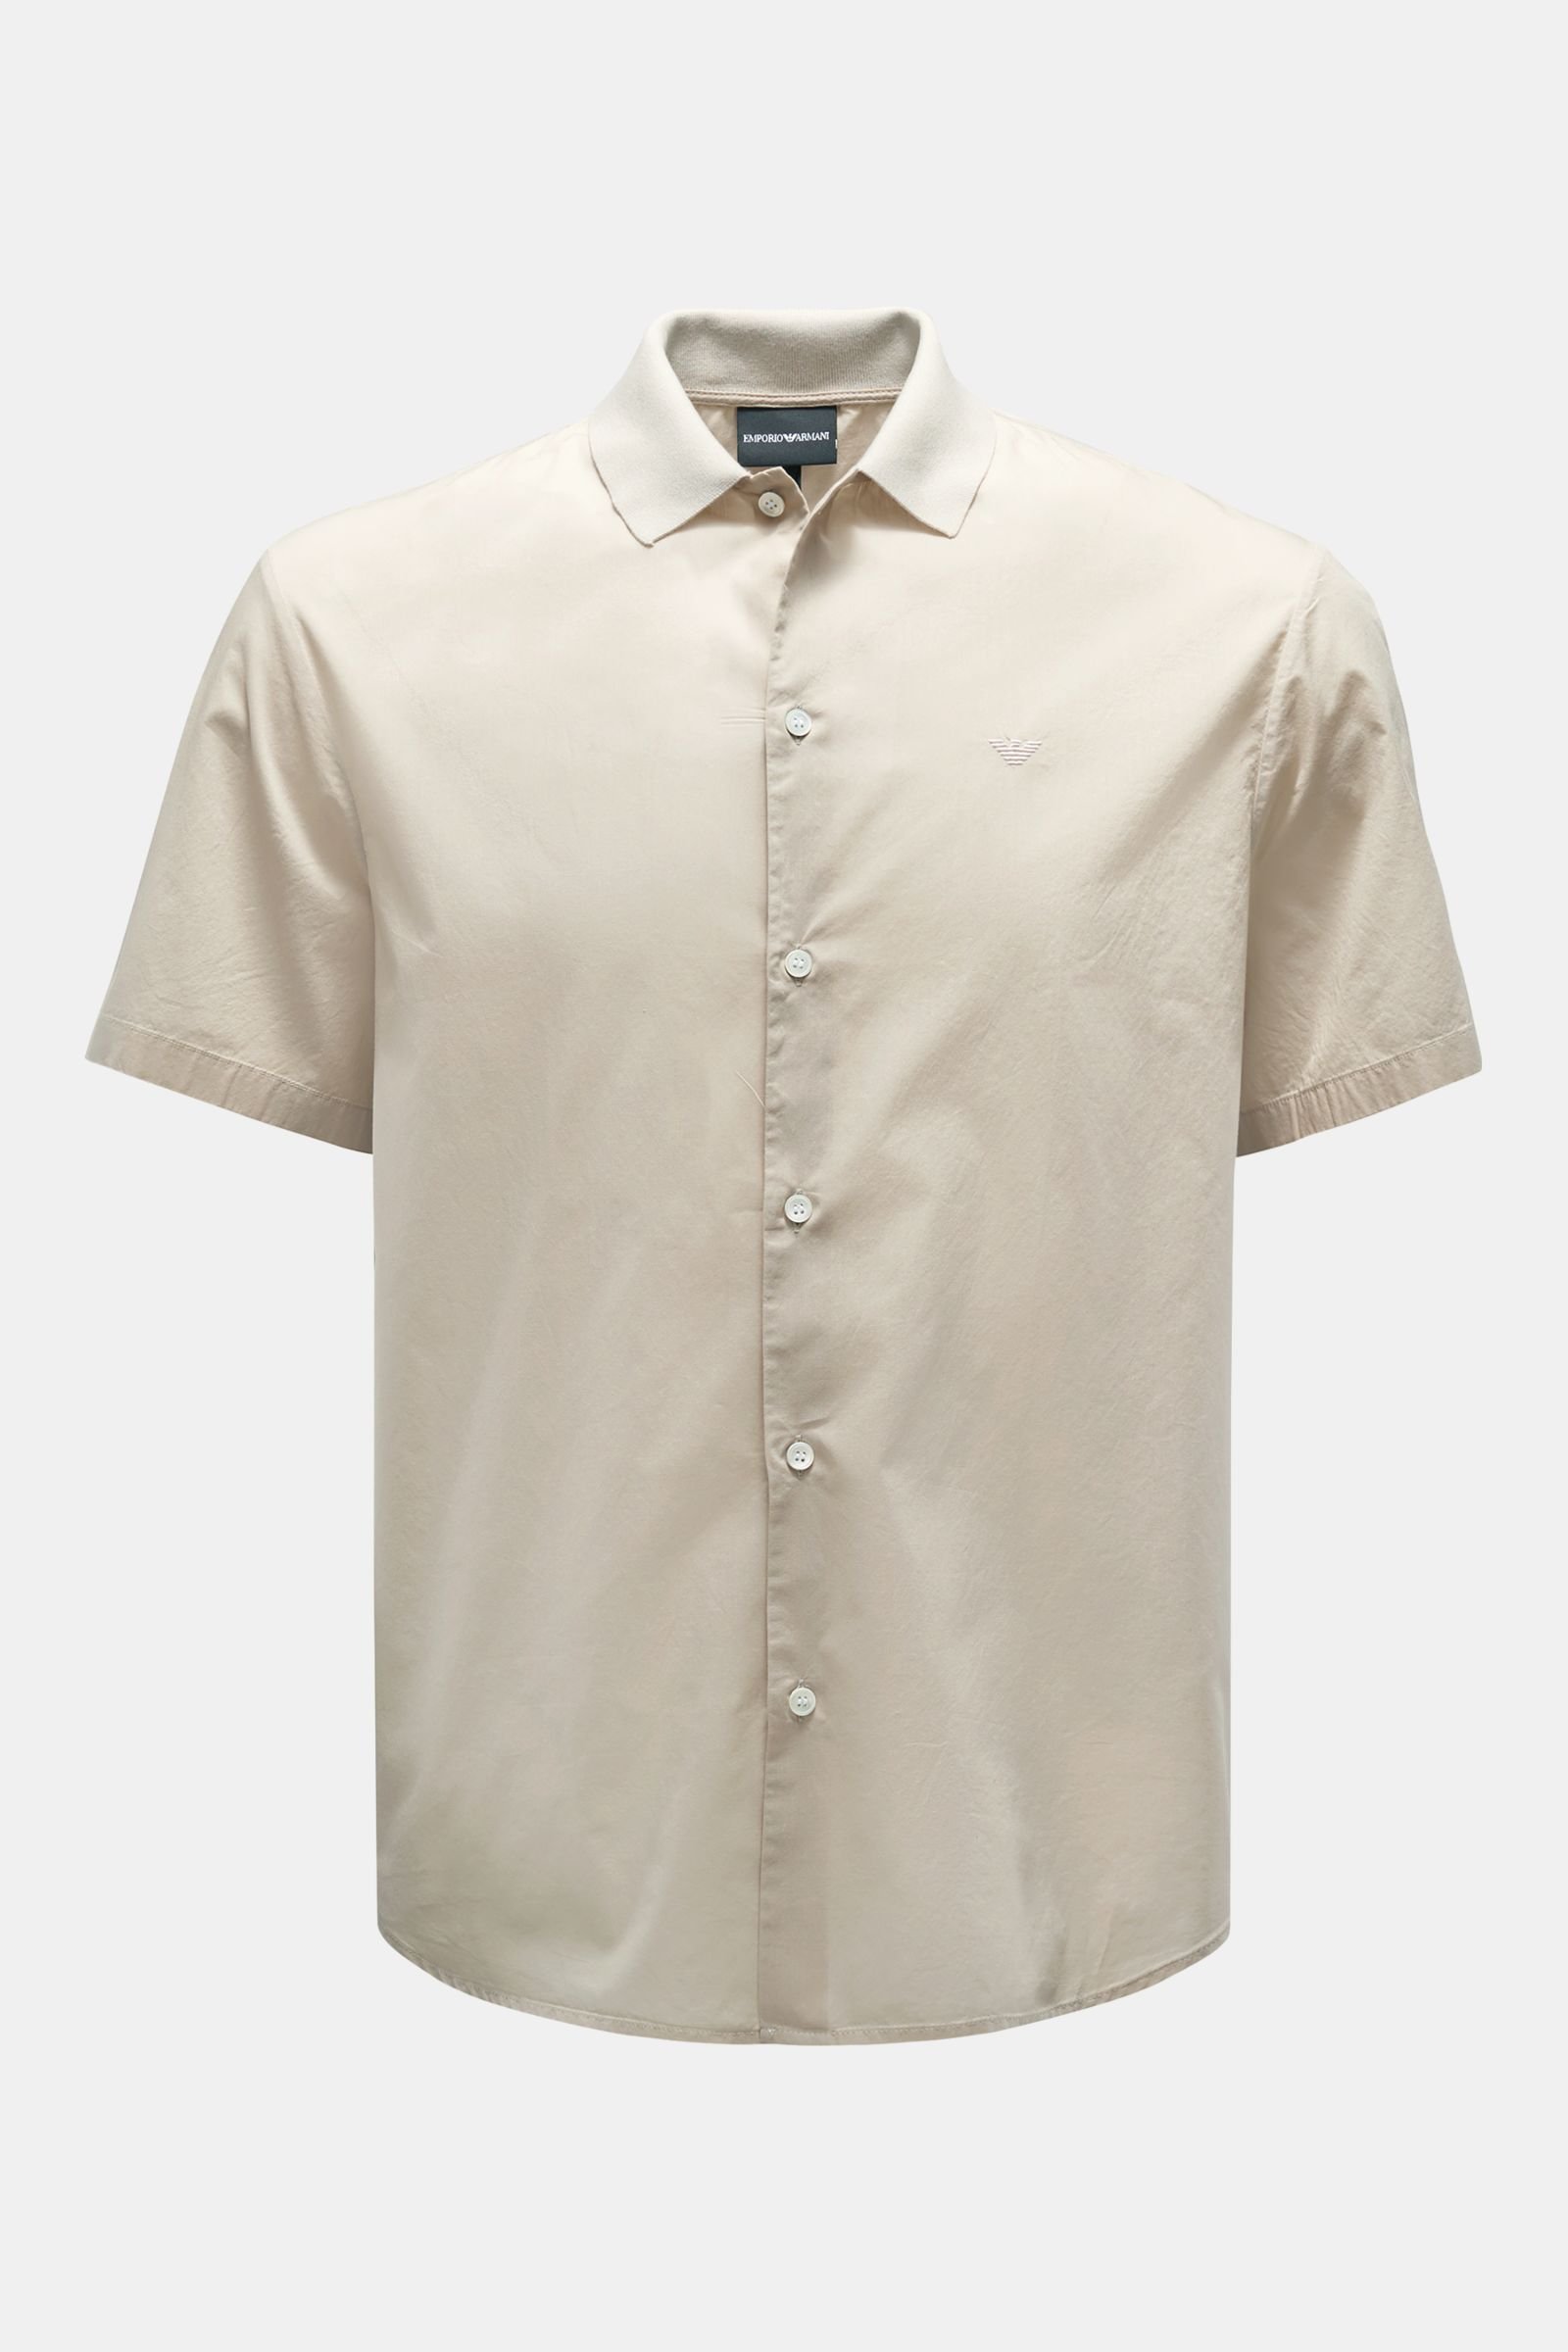 Short sleeve shirt narrow collar beige